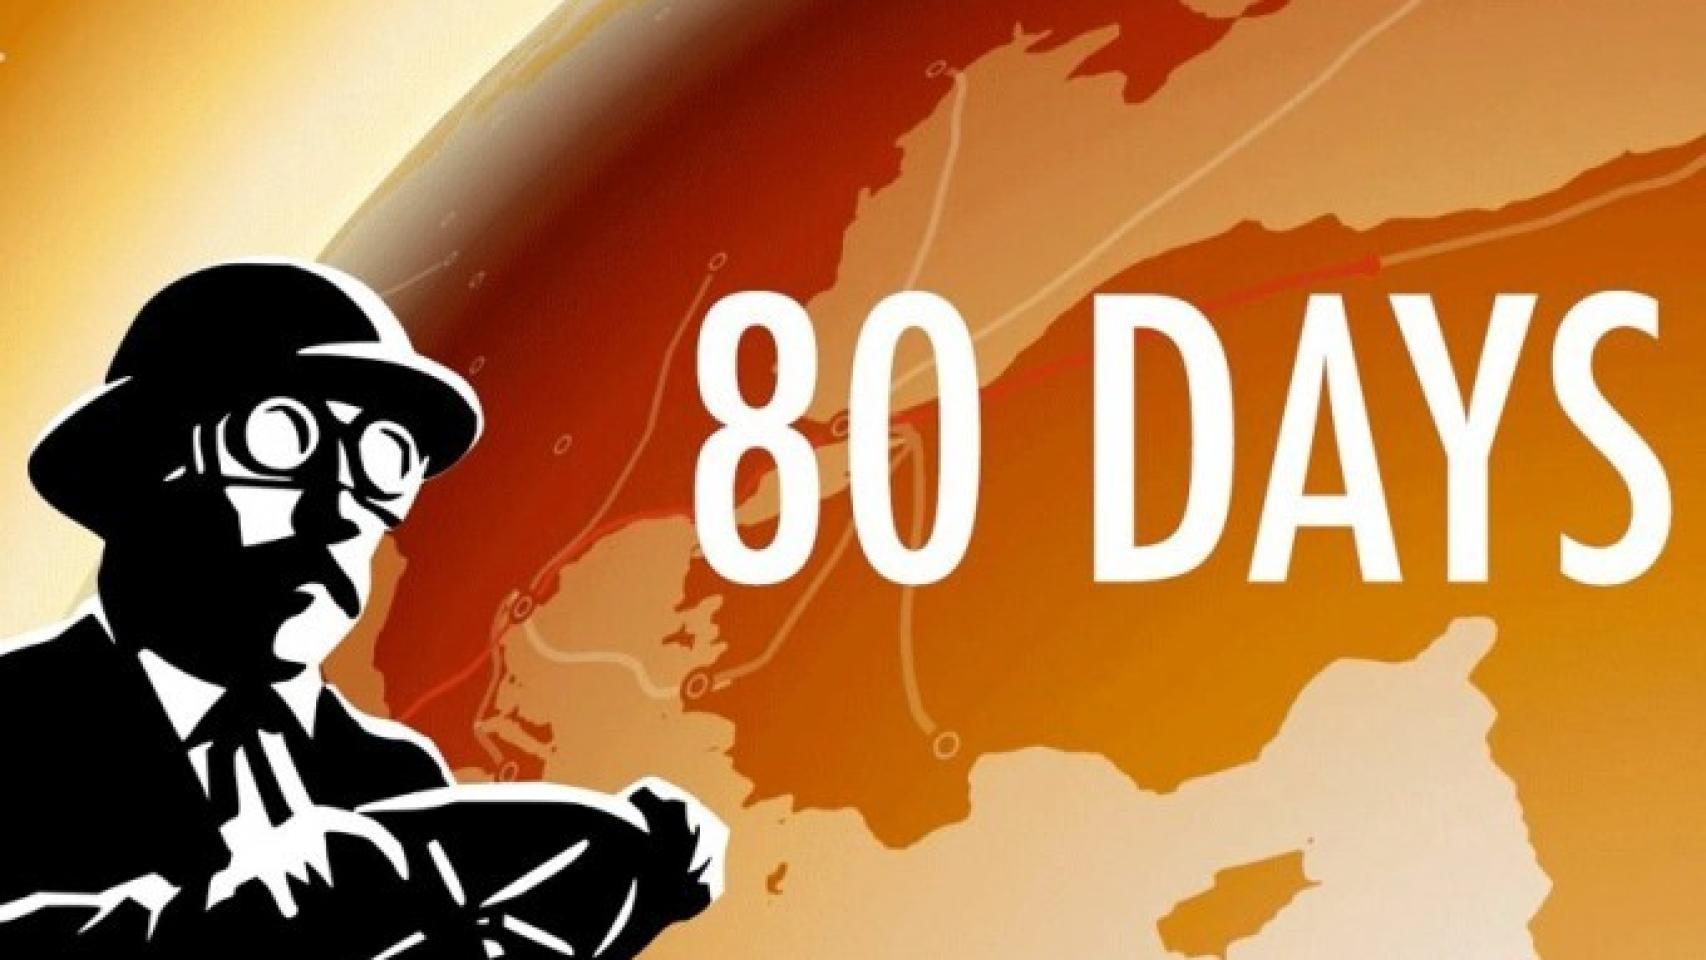 80 Days, el juego de temática steampunk para revivir la vuelta al mundo